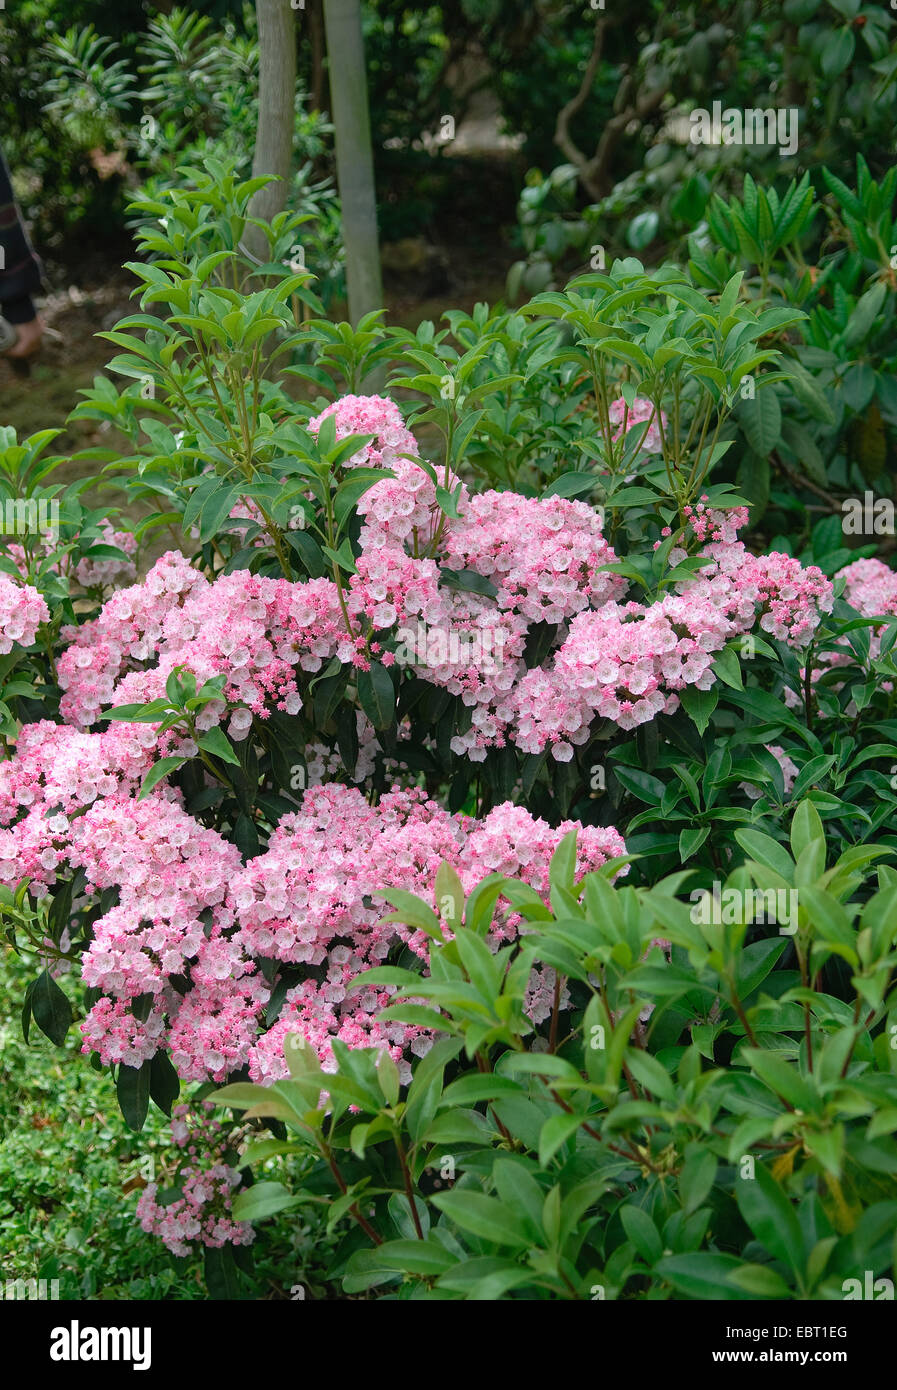 El laurel de montaña (Kalmia latifolia "alegre", Kalmia latifolia alegre), cultivar alegre, floreciendo Foto de stock